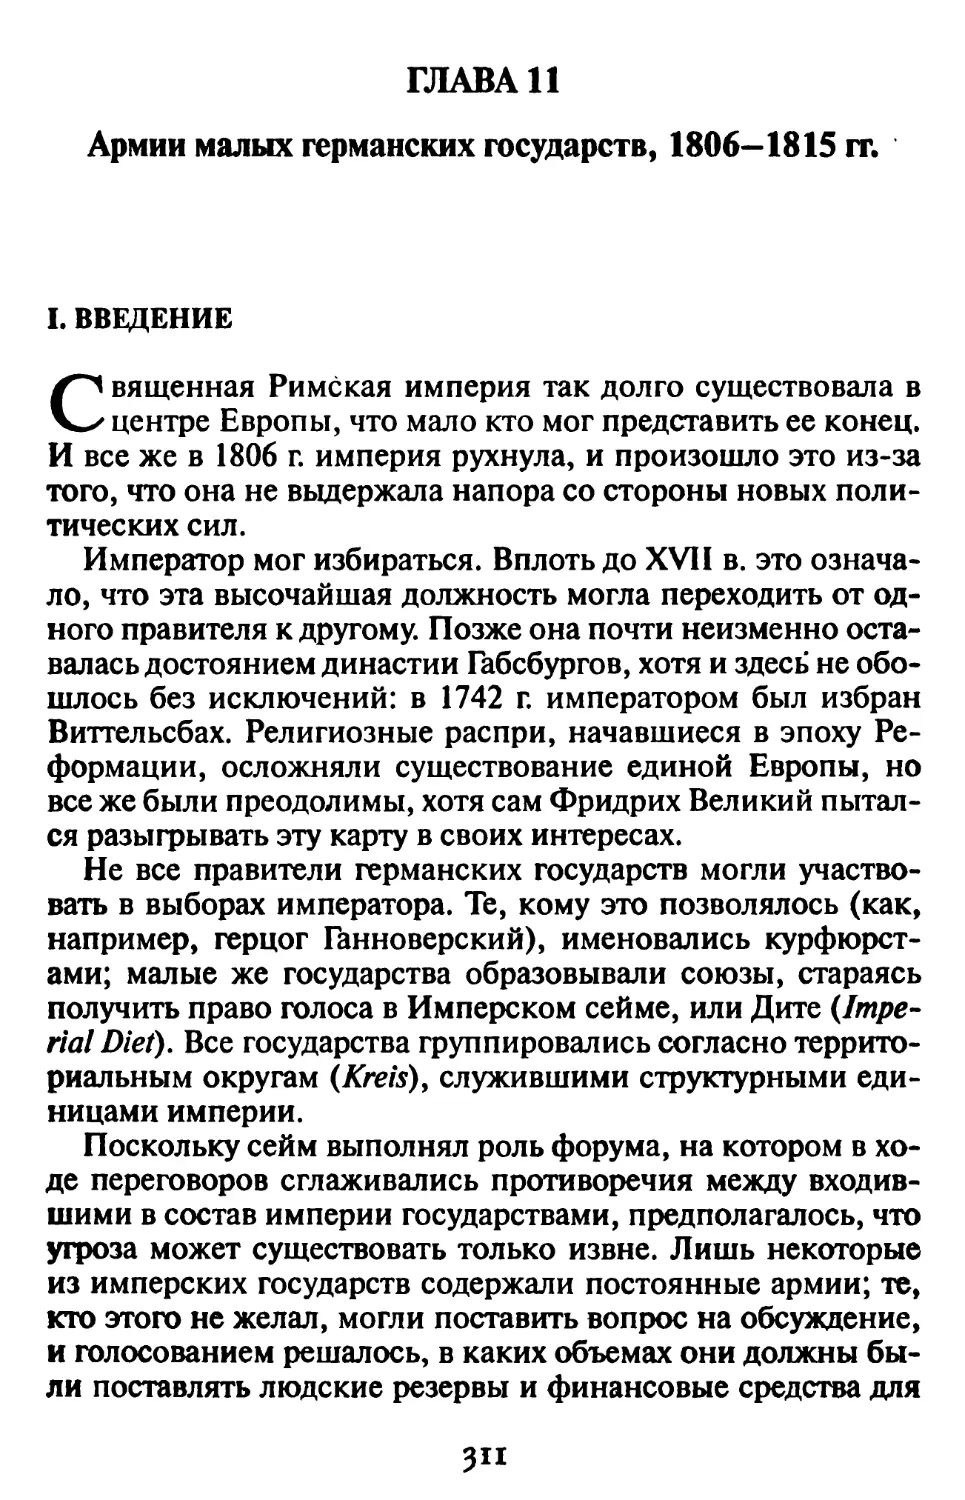 Гл. 11. АРМИИ МАЛЫХ ГЕРМАНСКИХ ГОСУДАРСТВ, 1806-1815 гг.